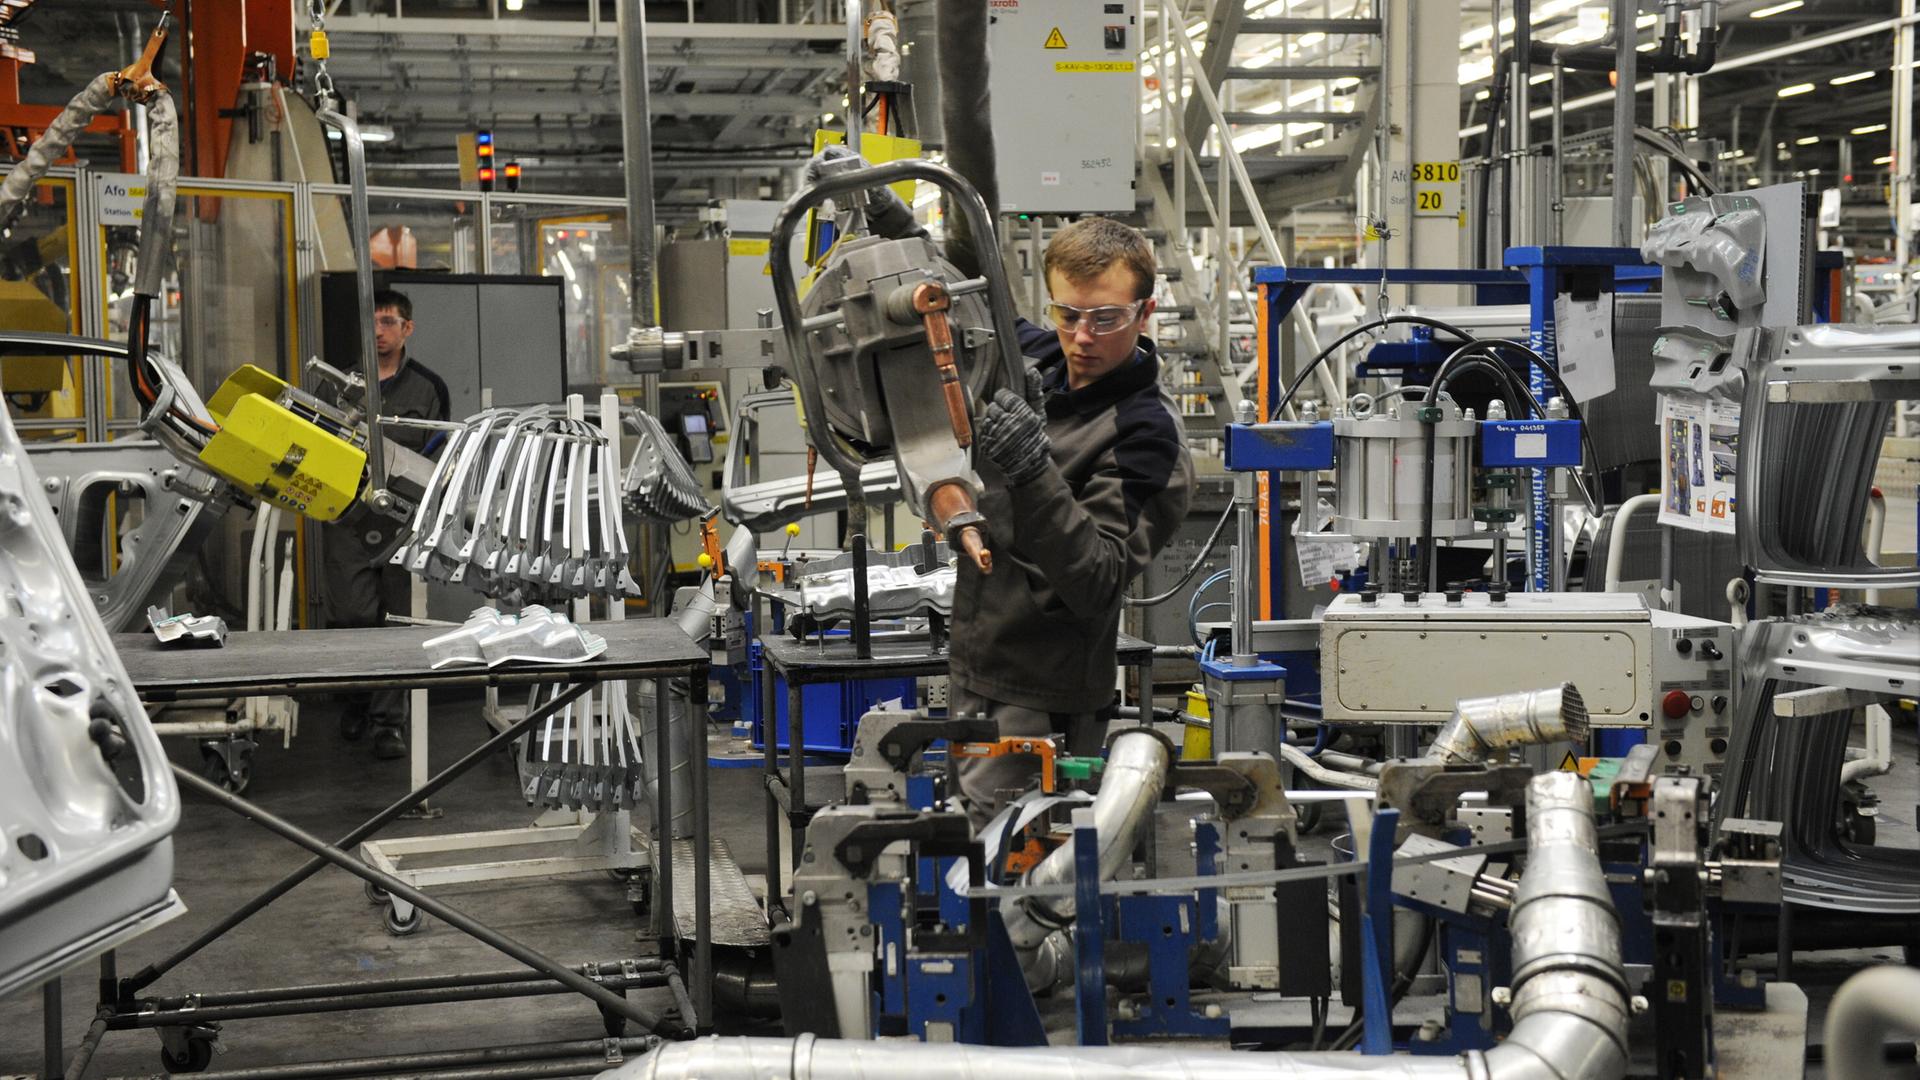 Ein Arbeiter mit Schutzbrille führt ein von der Decke hängendes Gerät an einen VW-Motor. Dahinter steht ein weiterer Arbeiter.